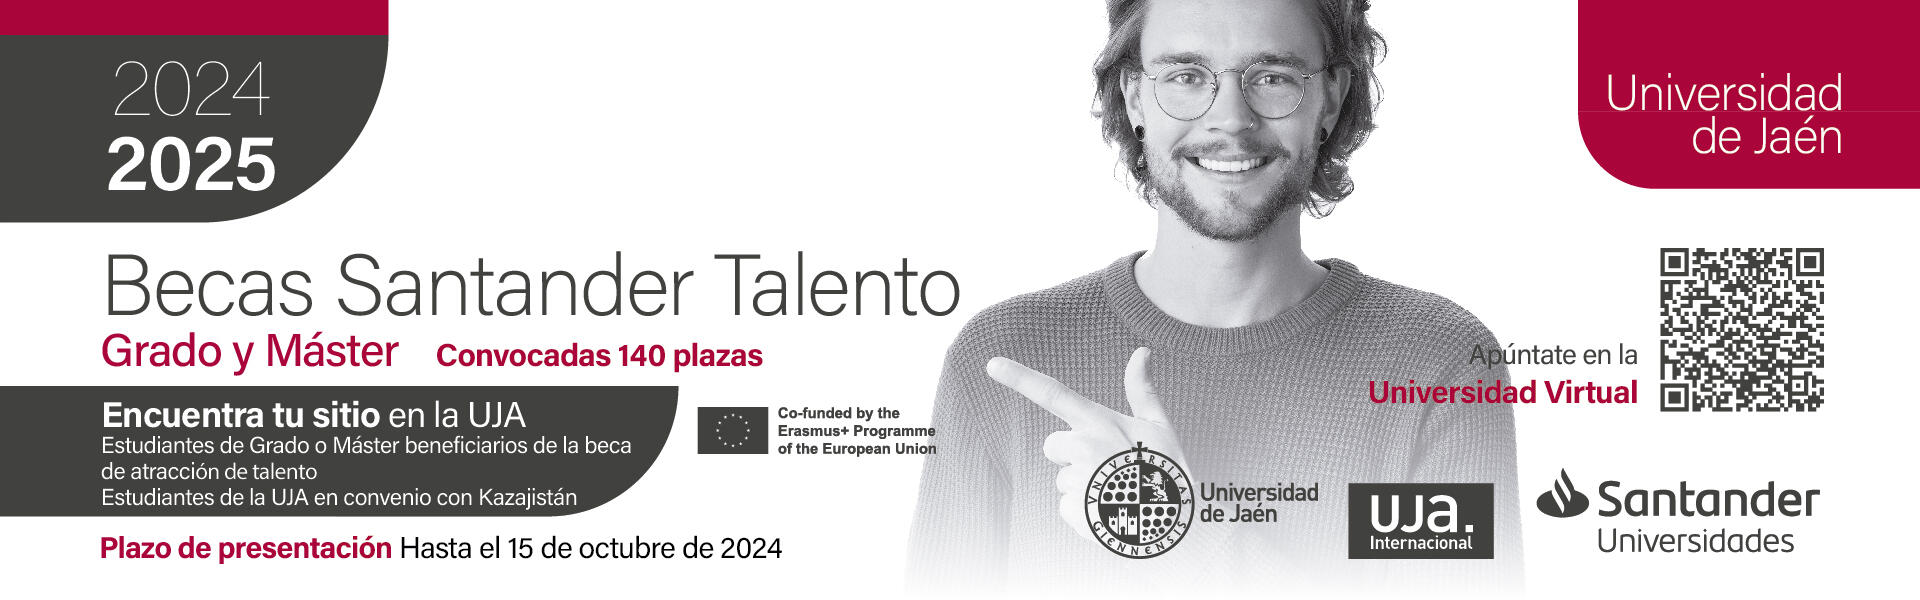 Becas Santander Talento. Grado y Master